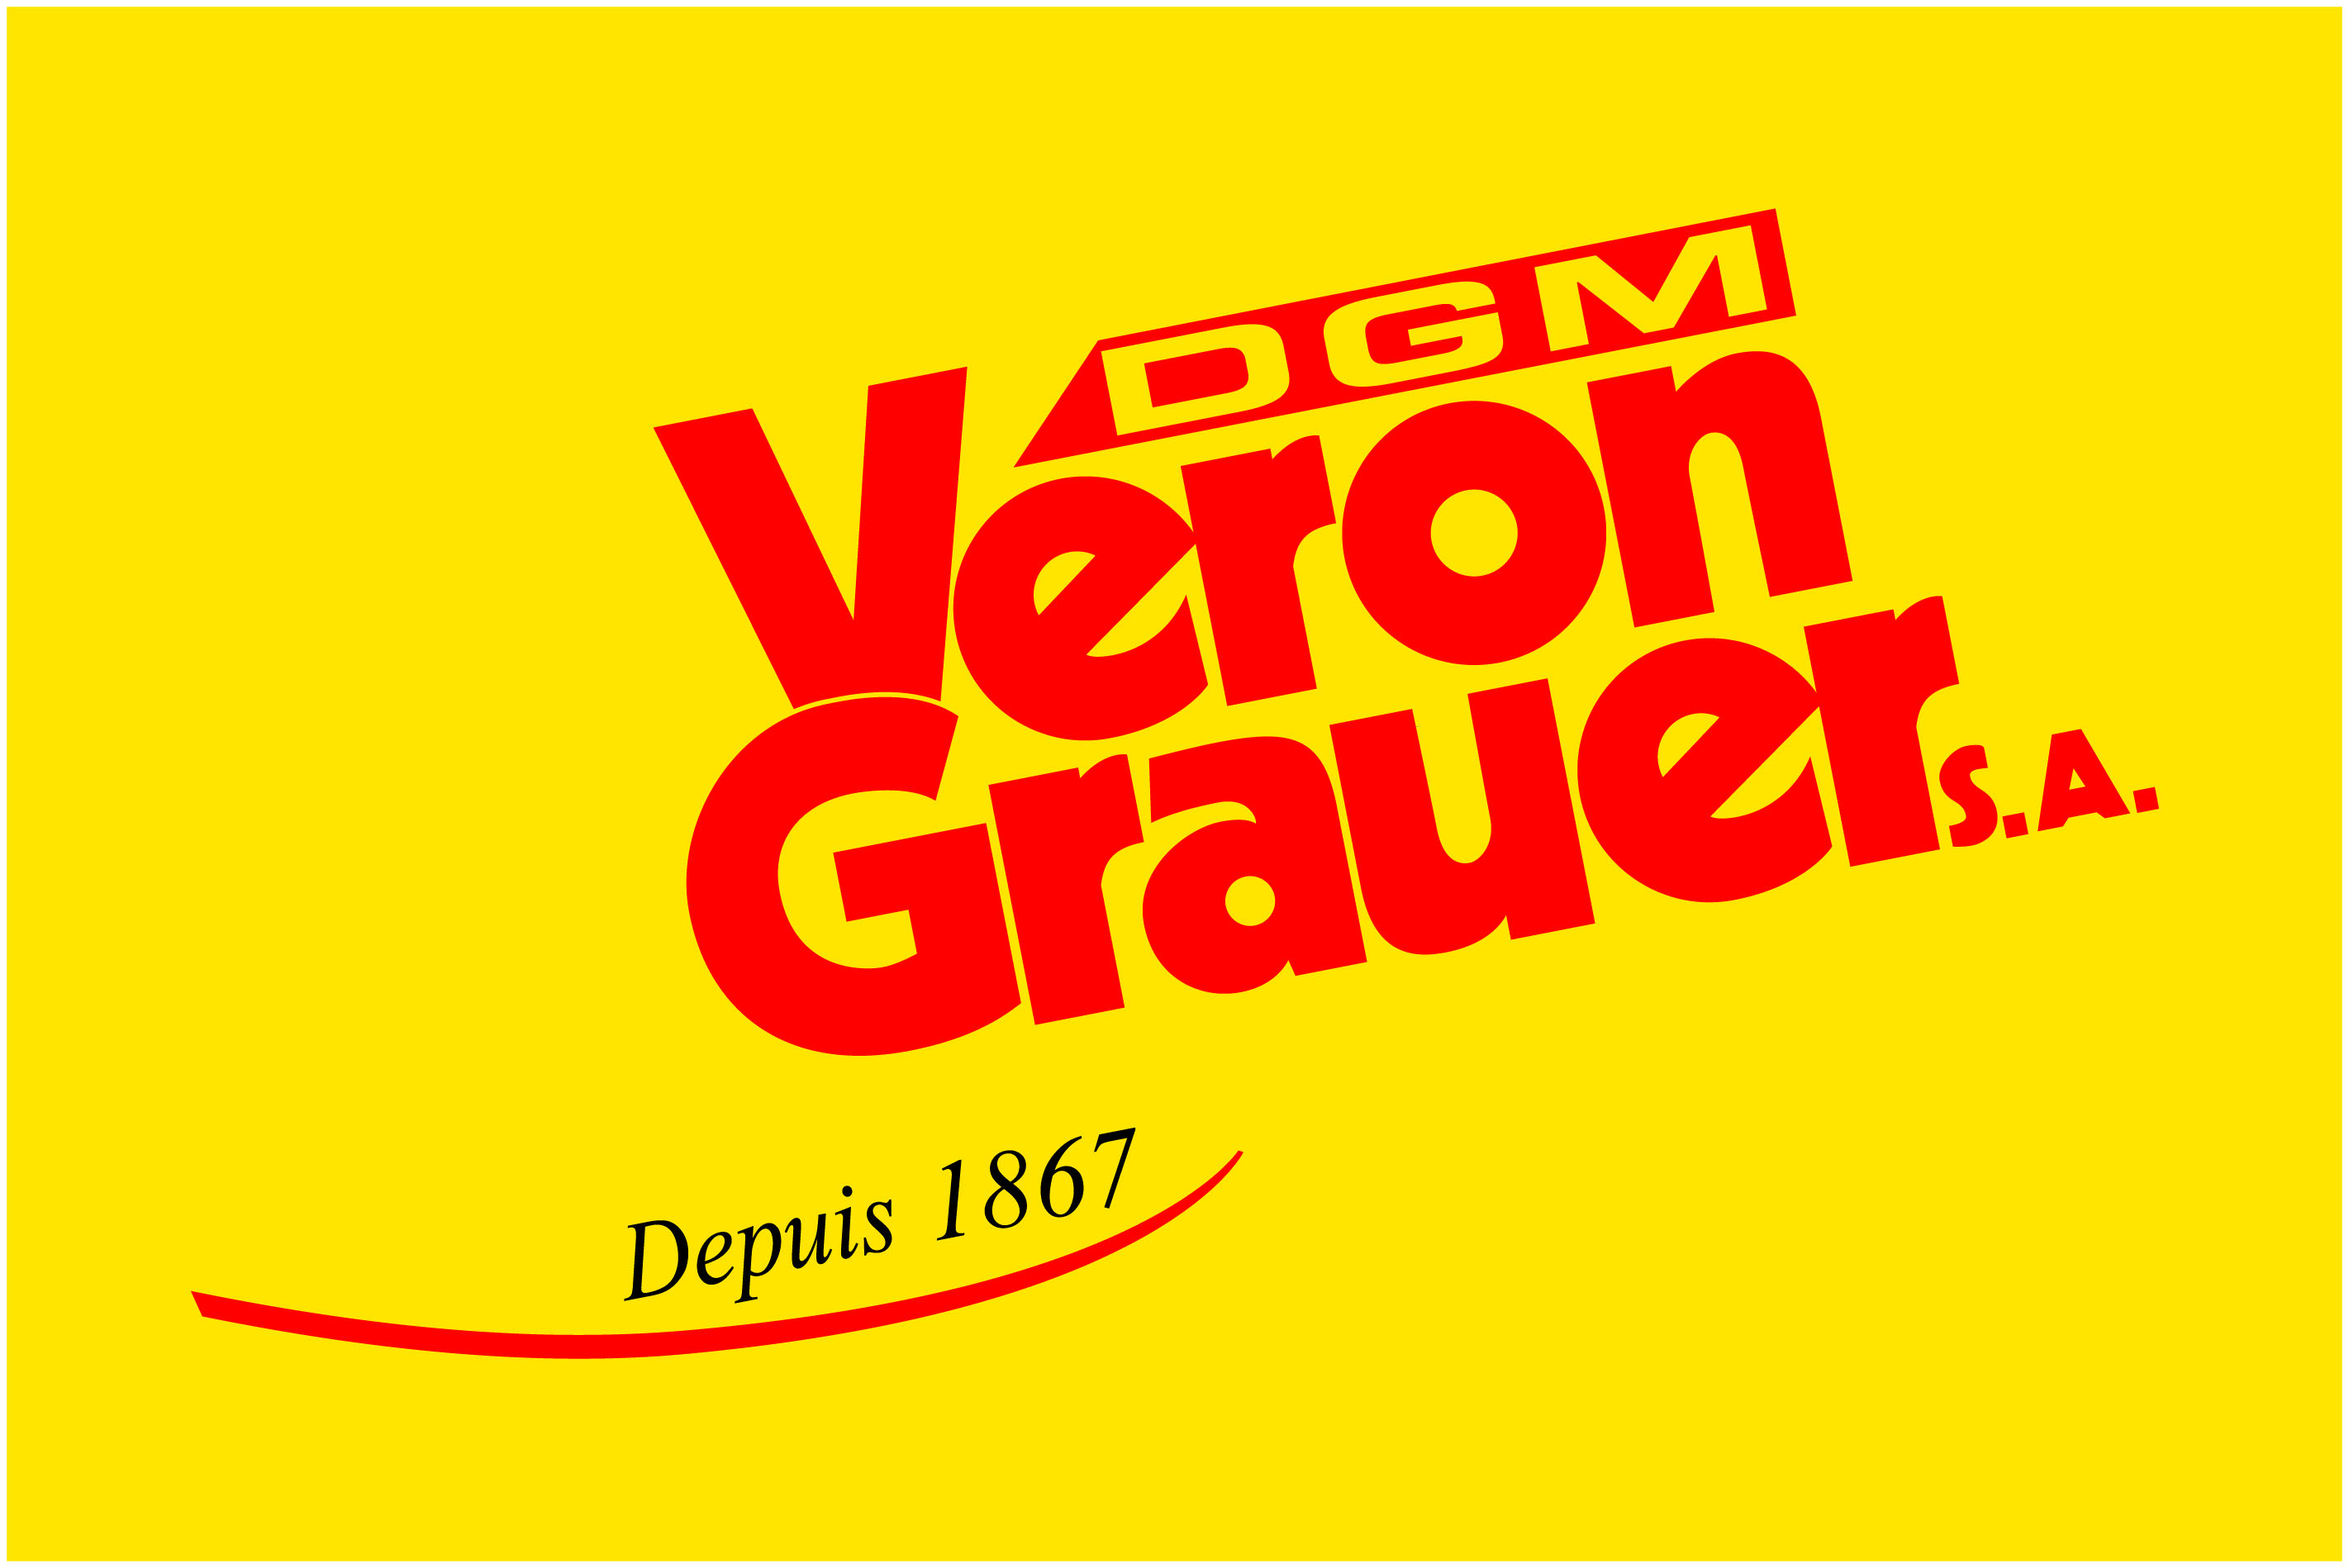 Veron Grauer